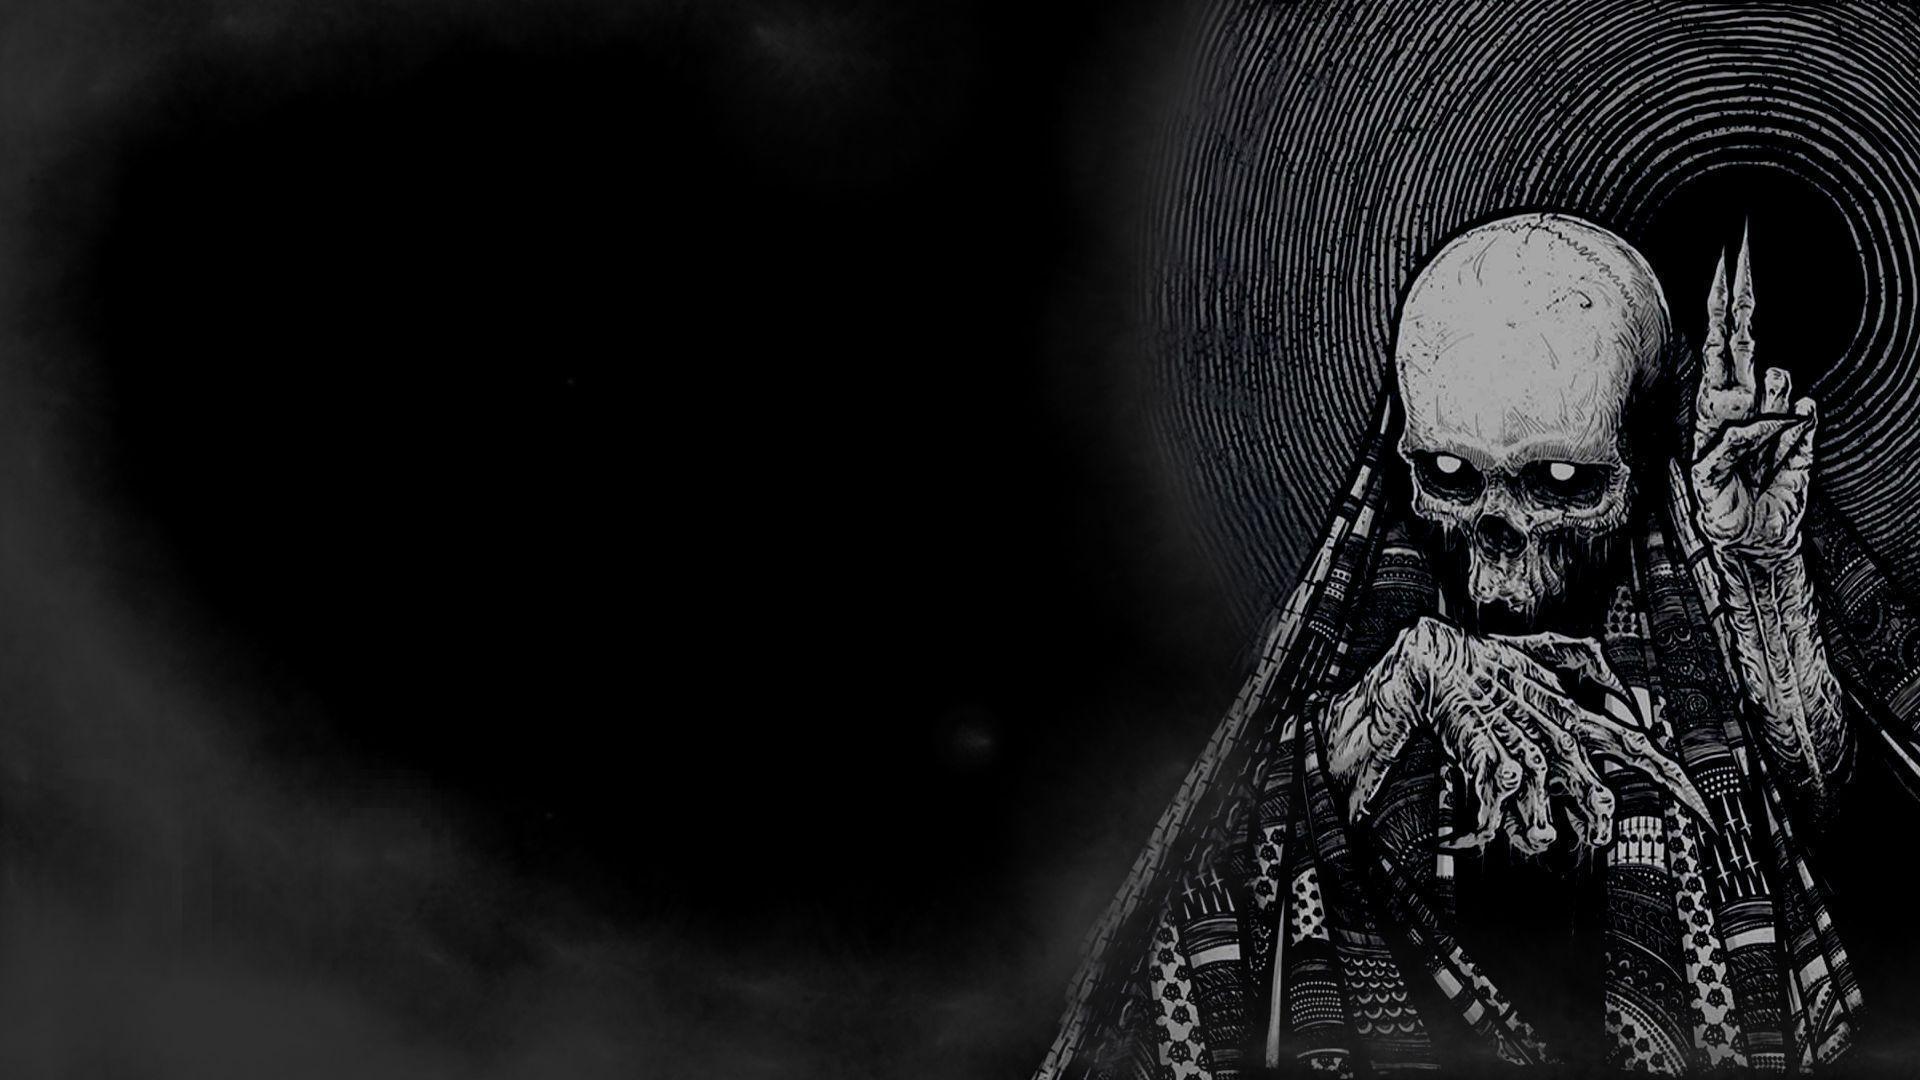 Horror Skull Wallpapers - Wallpaper Cave 3d Skull Wallpaper Hd